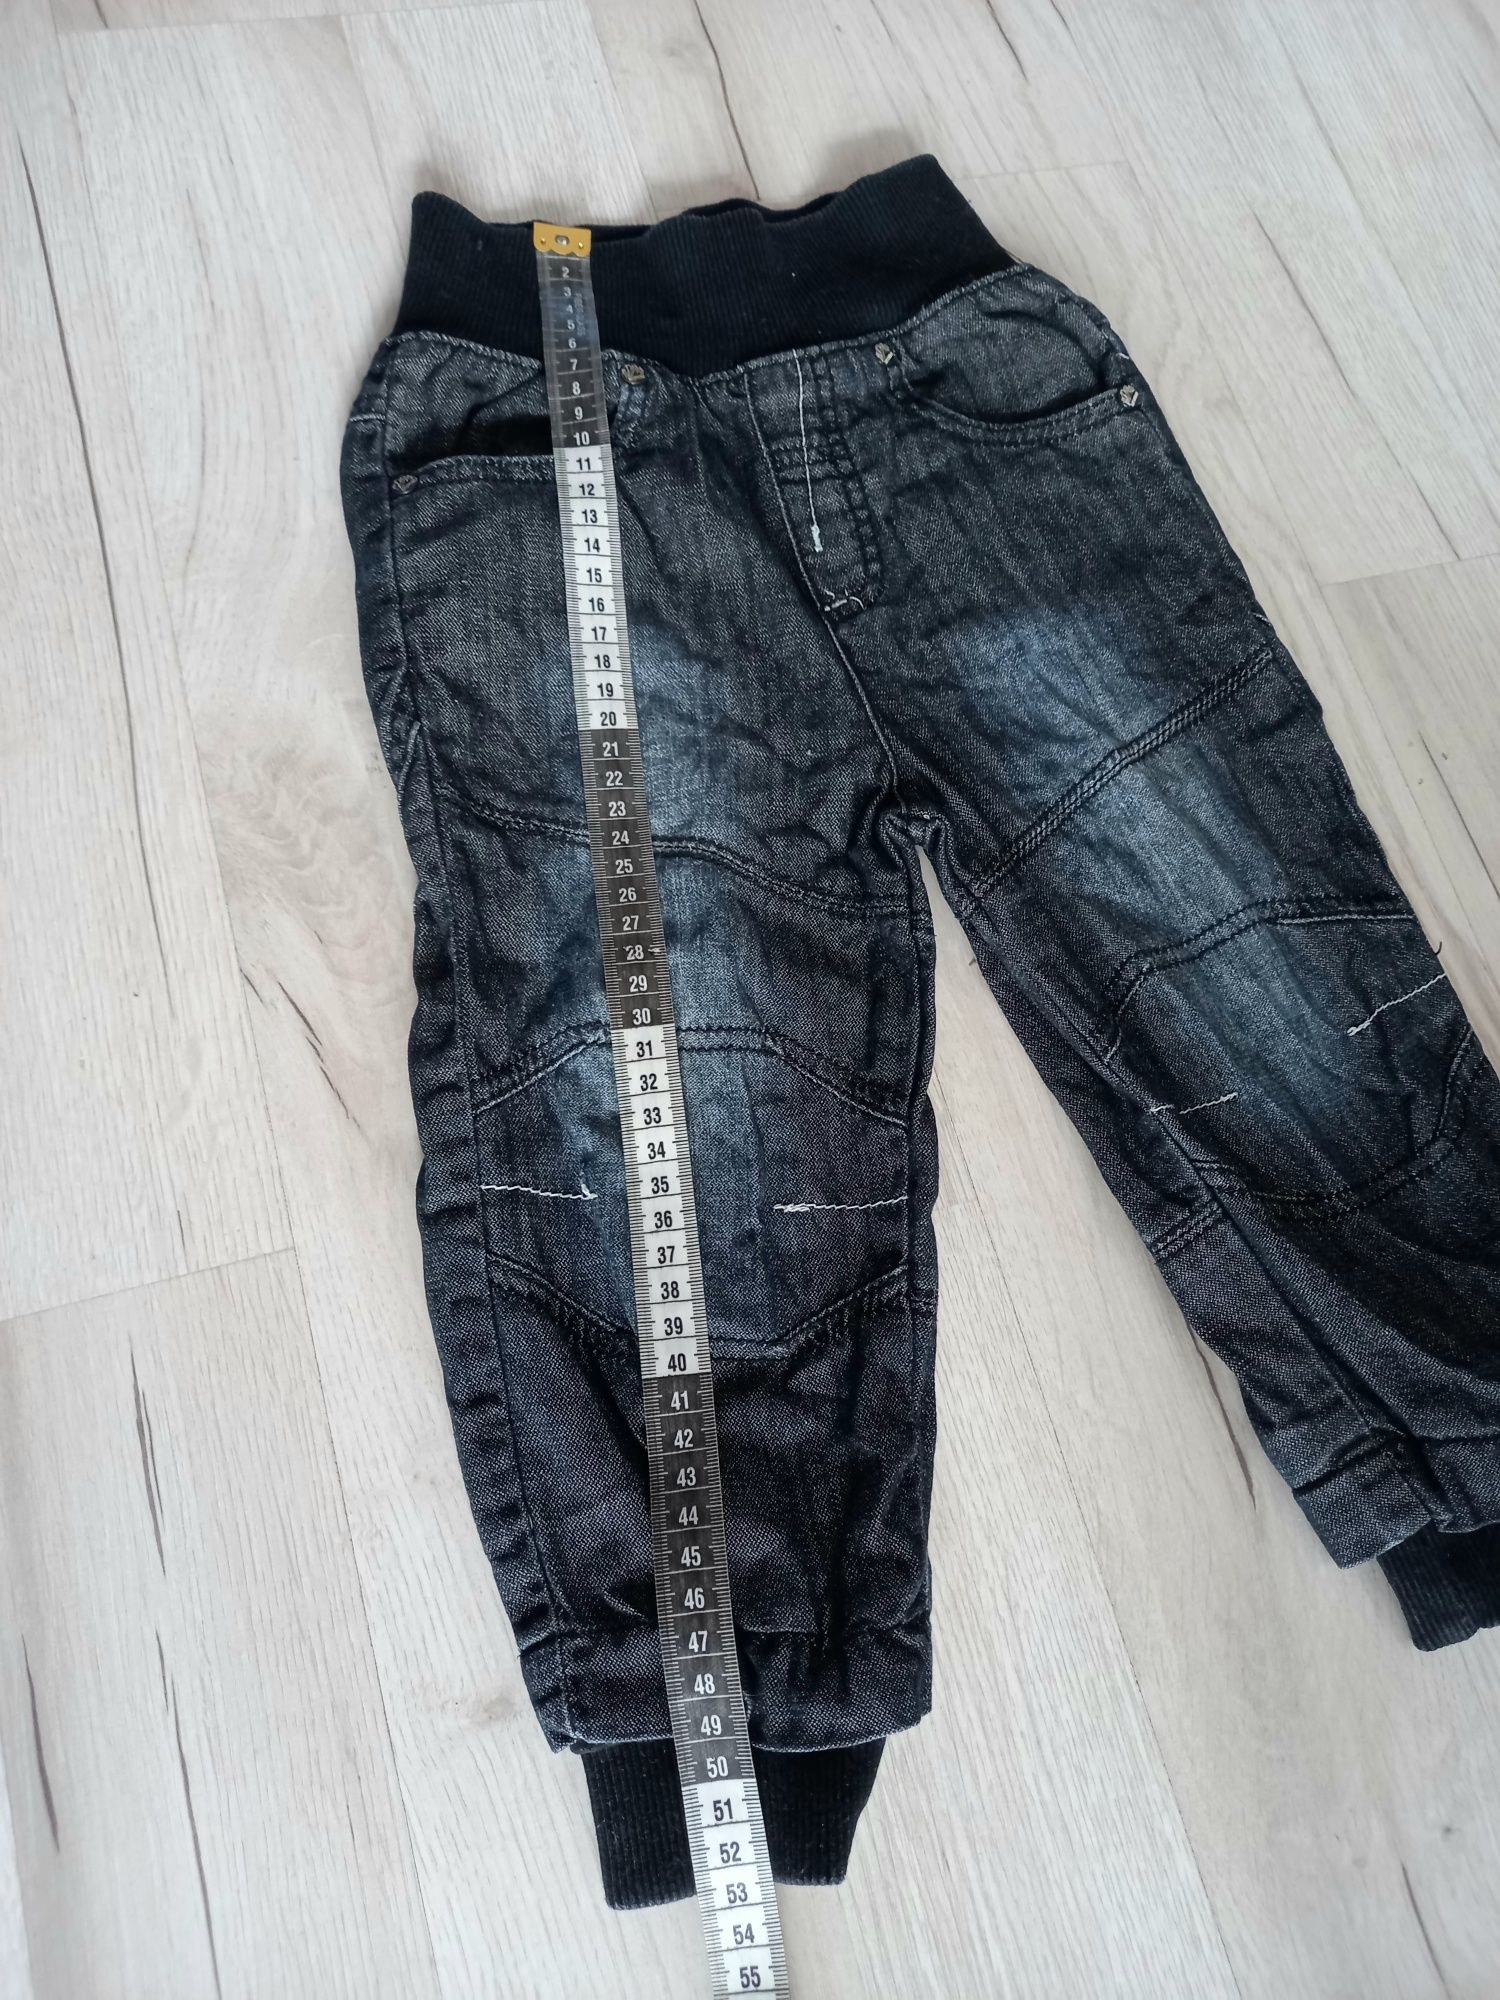 Czarne spodnie chłopięce jeansowe mohini r 80